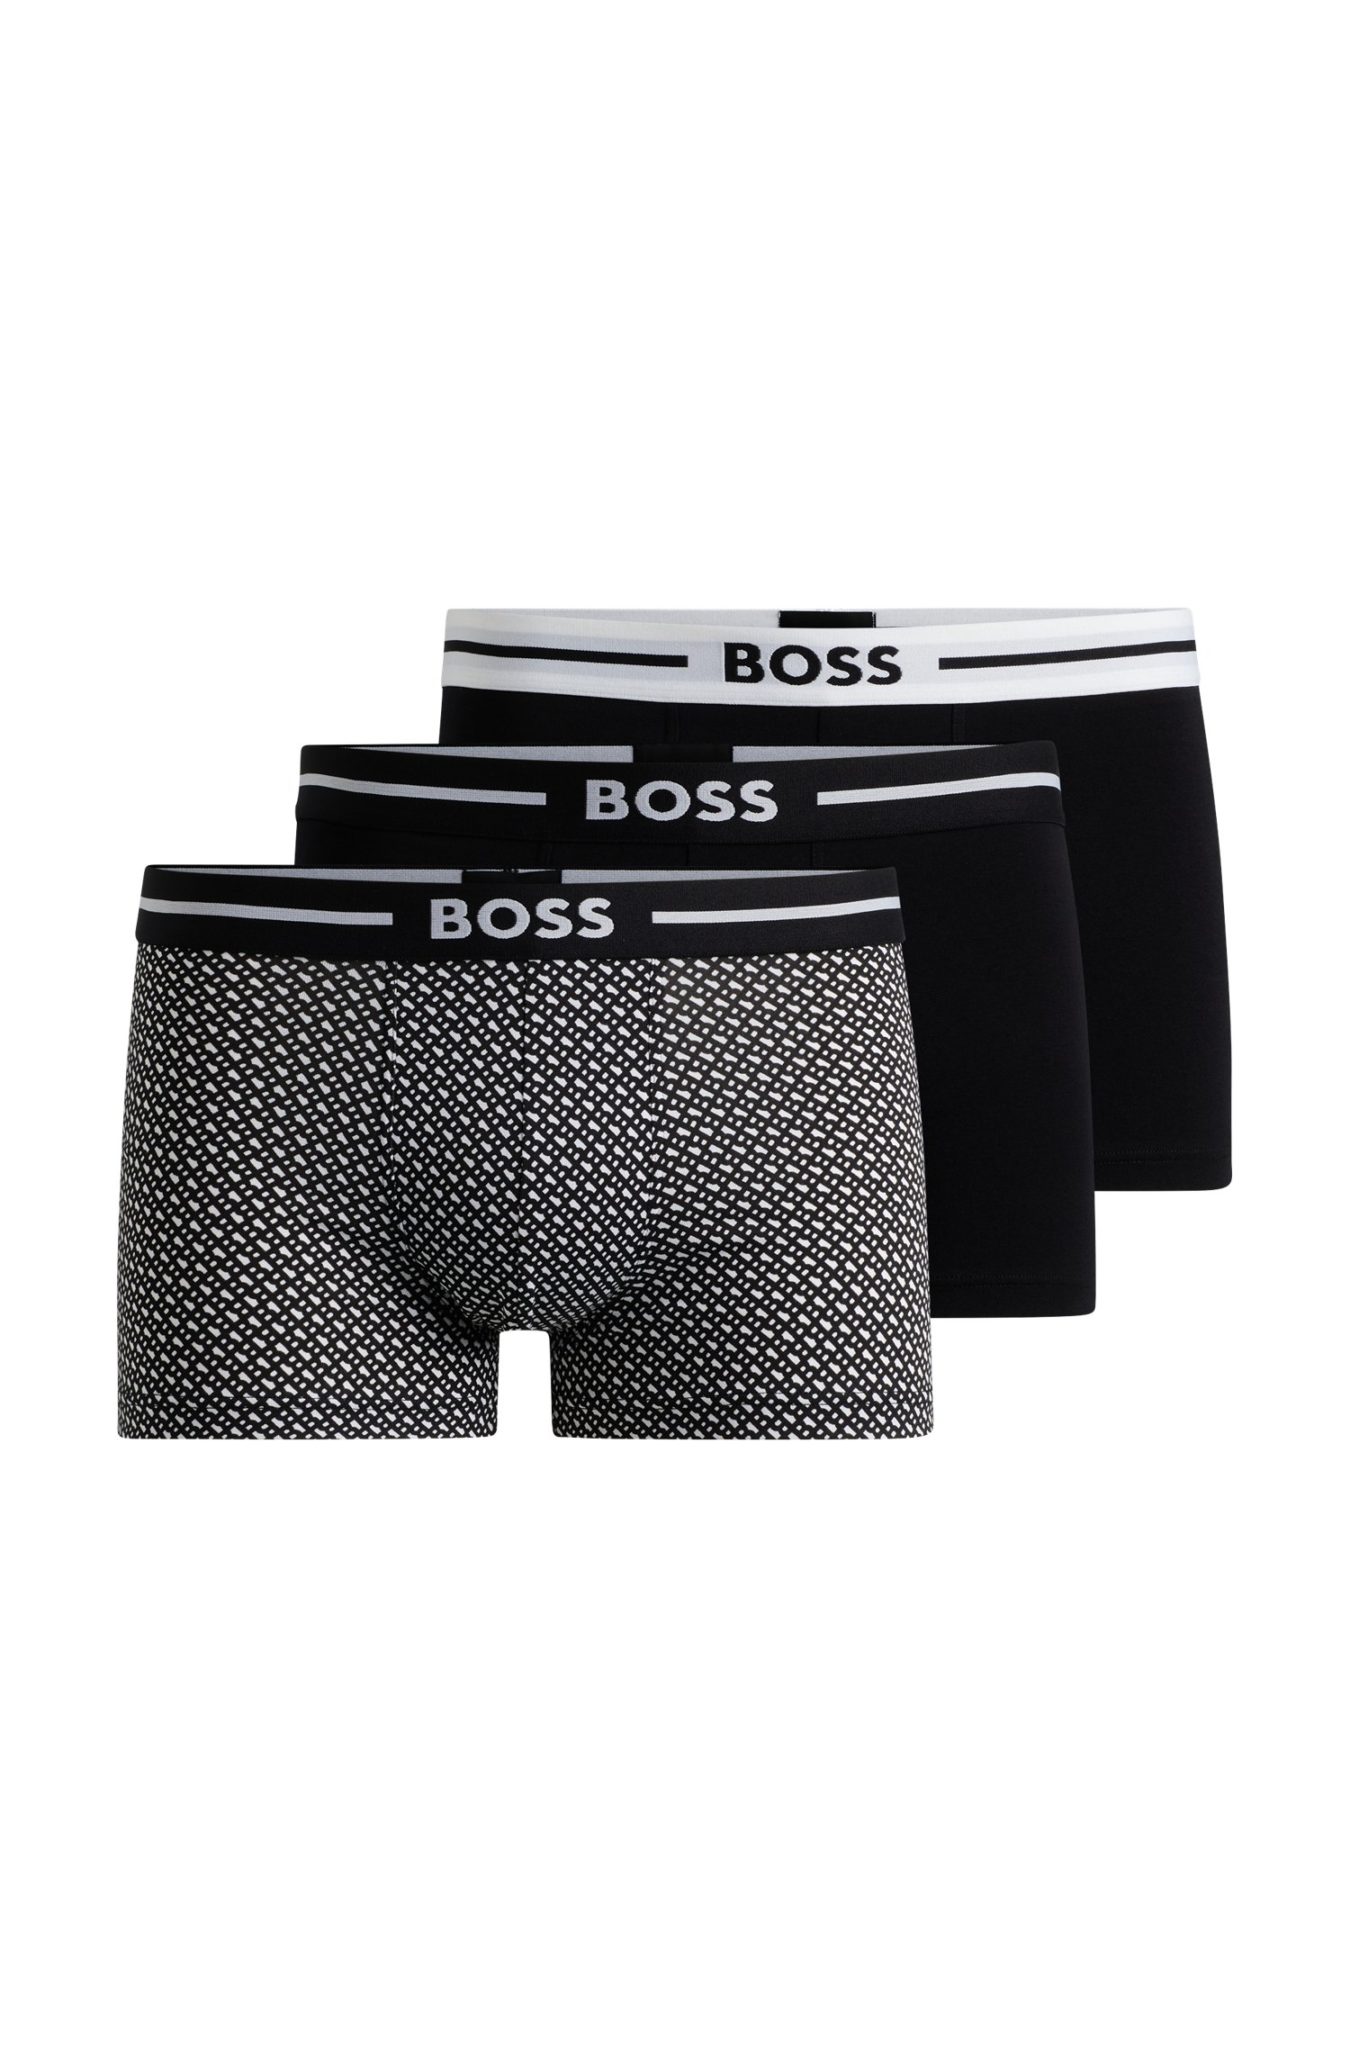 Hugo Boss Lot de trois boxers courts en coton stretch avec taille logotée